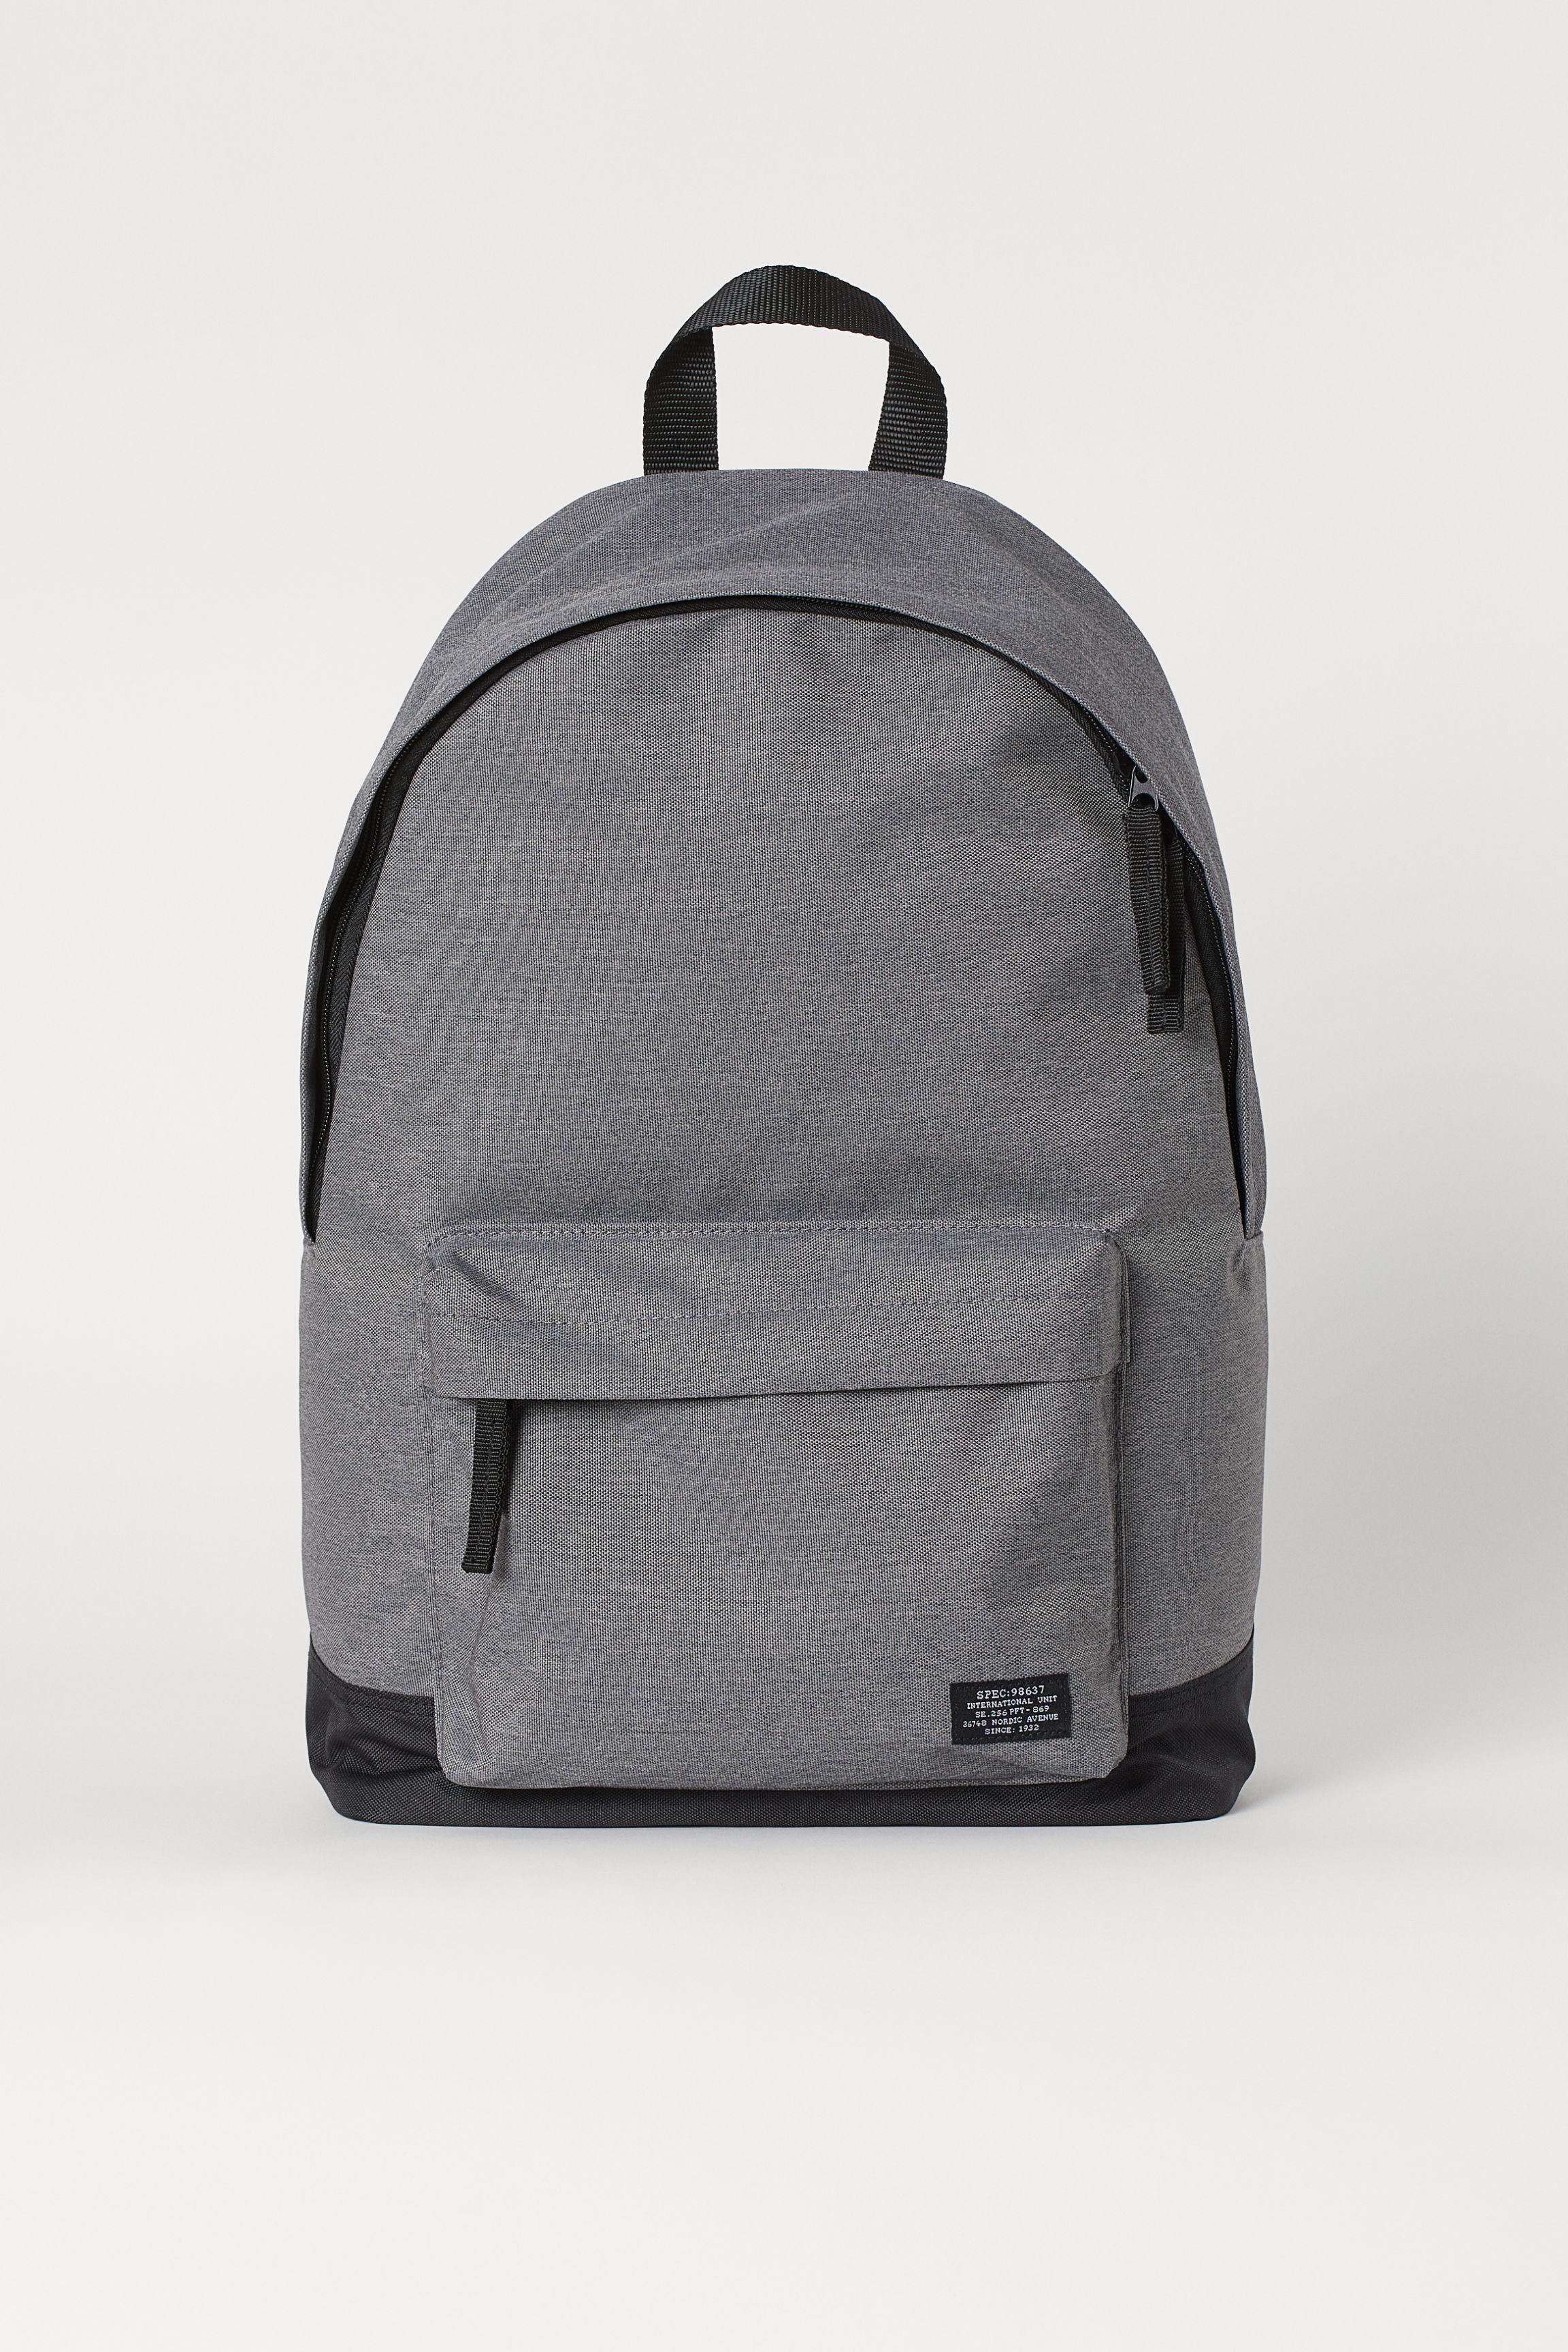 H&M Synthetic Backpack in Gray Melange/Dark Blue (Gray) for Men - Lyst